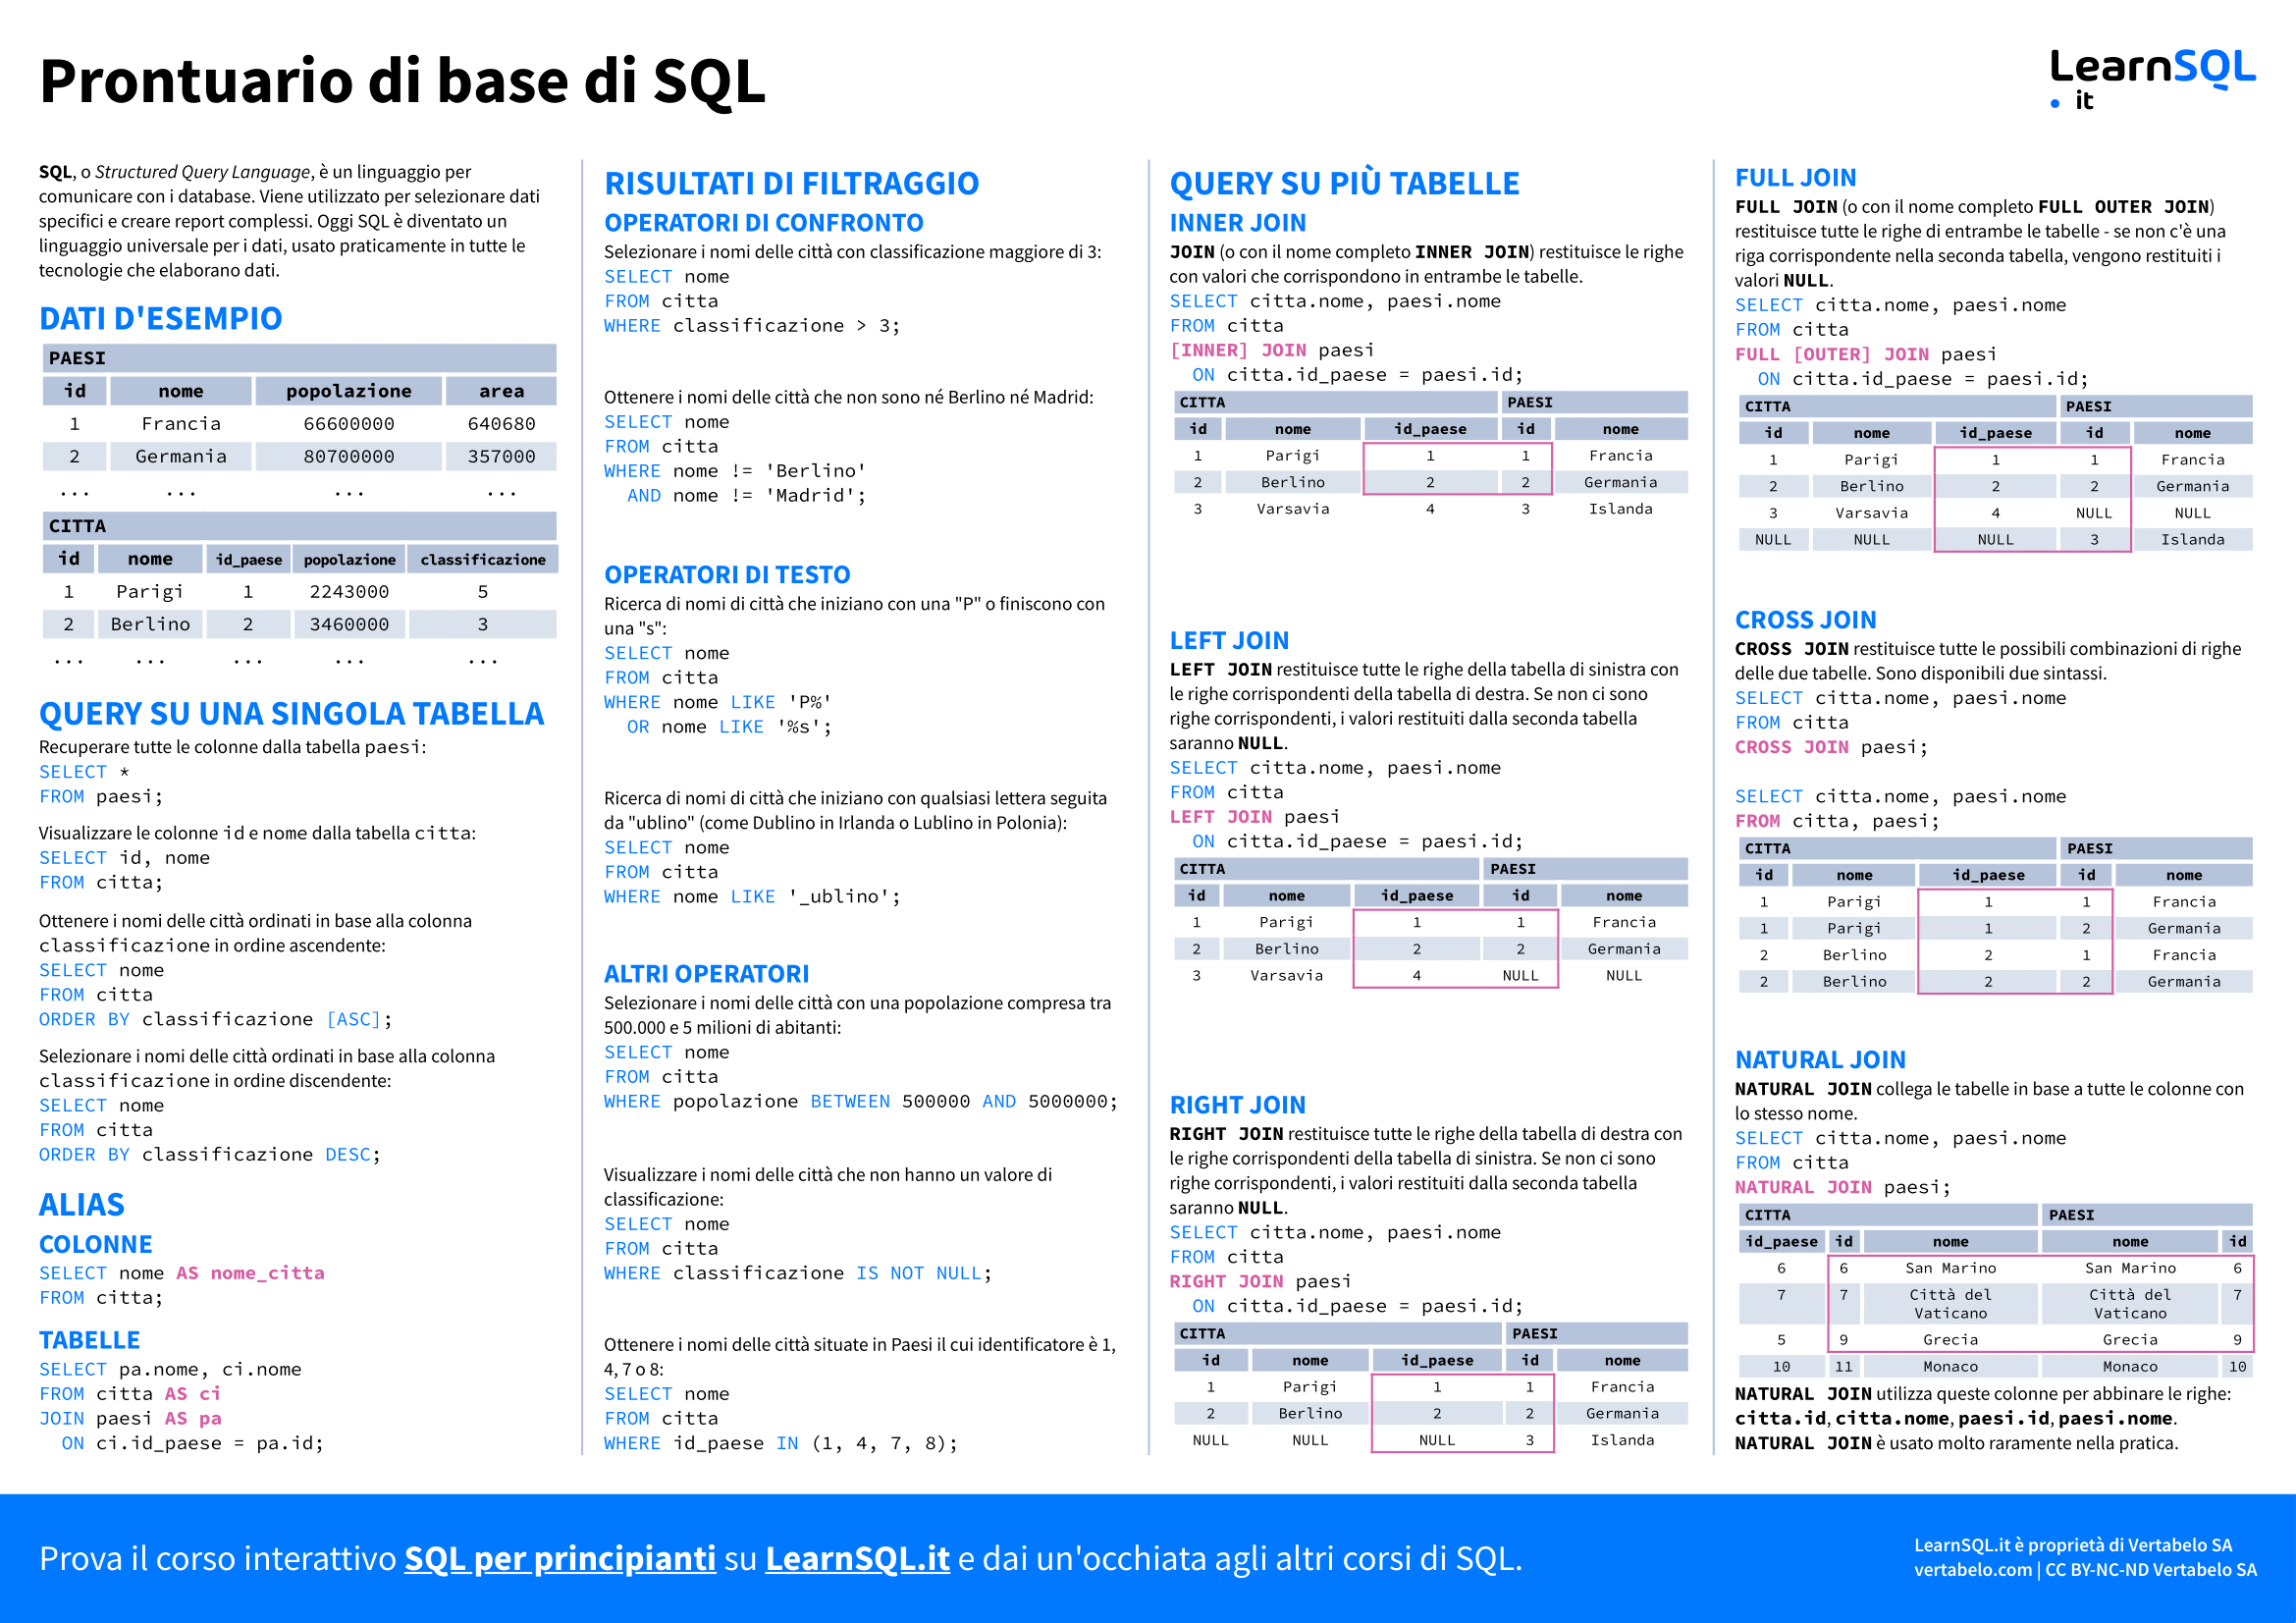 Prima pagina del prontuario sulle basi di SQL